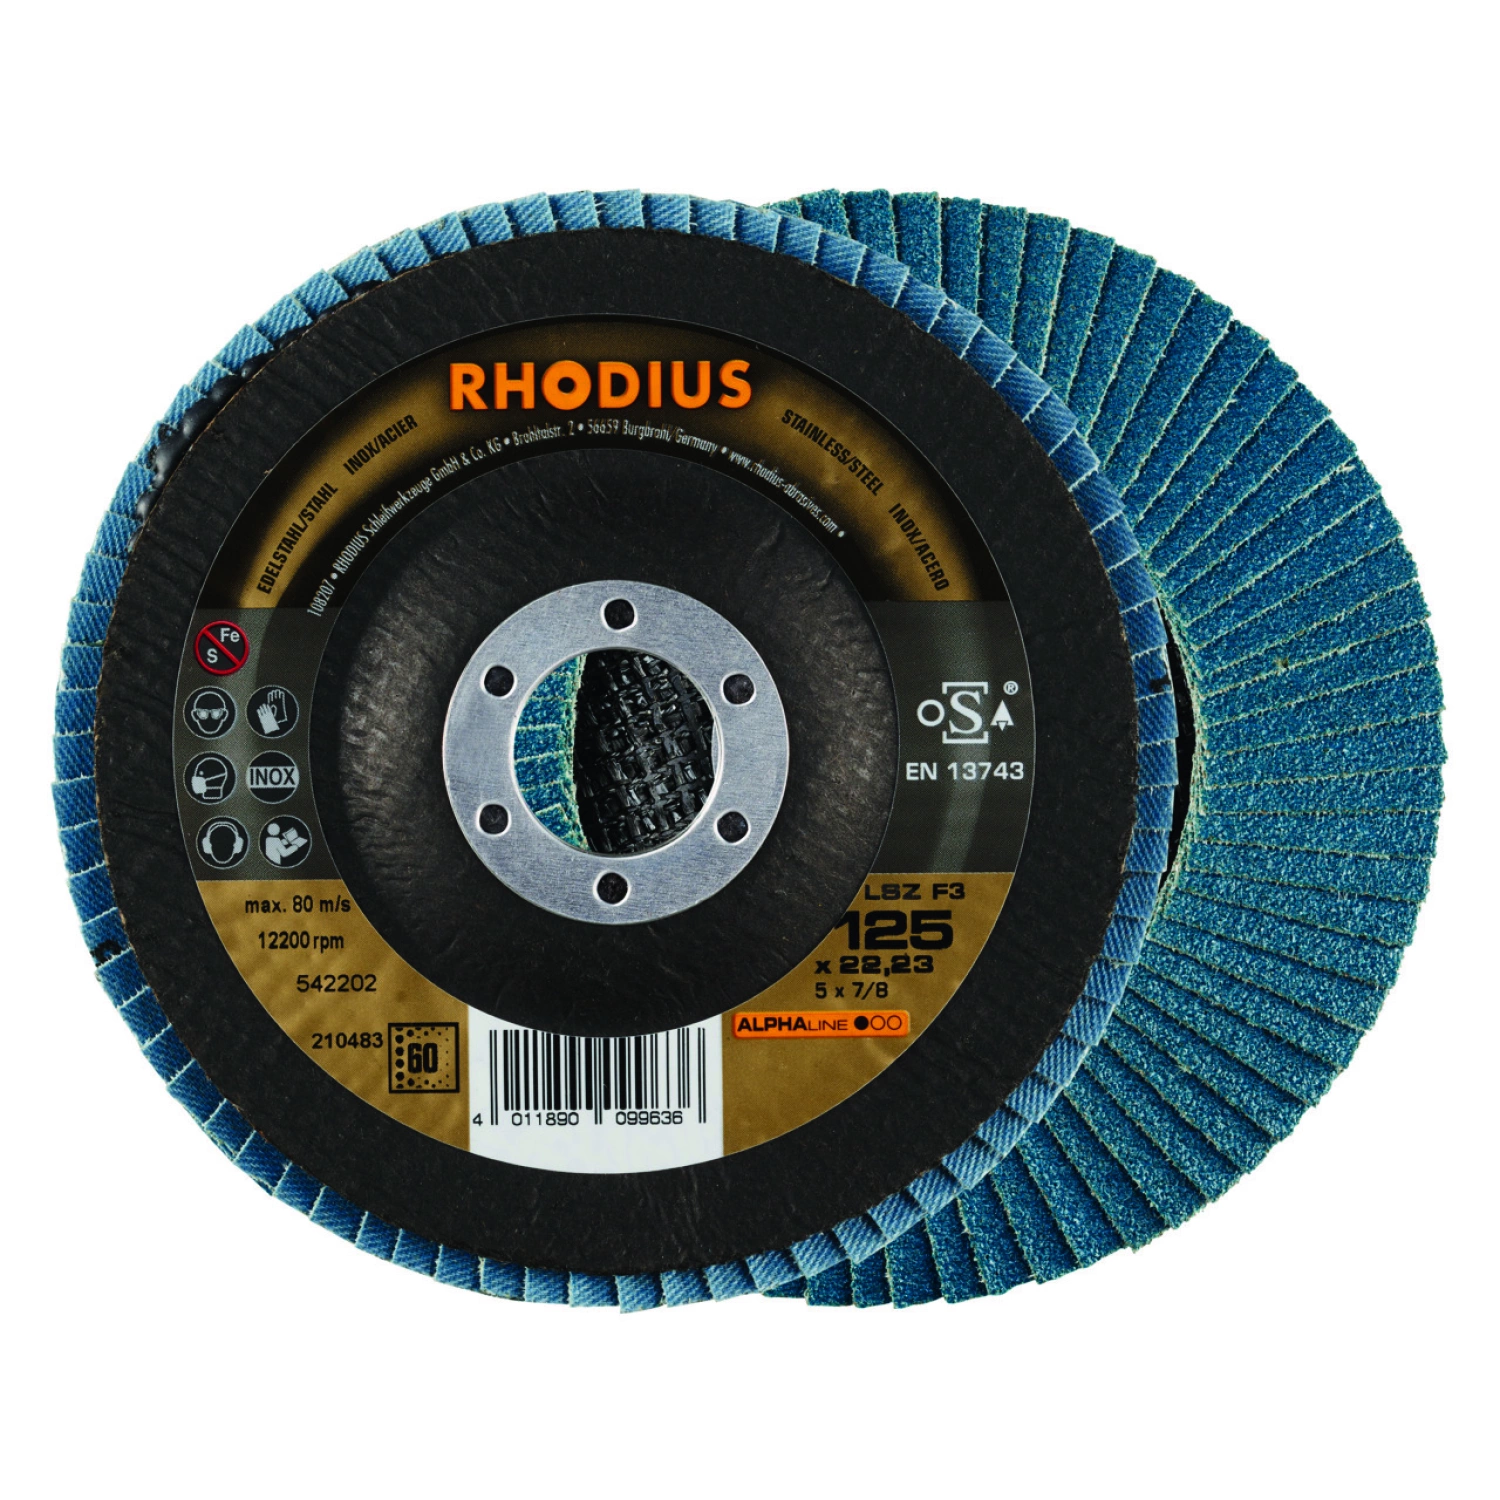 Rhodius 210483 LSZ F3 K60 ALPHALINE | Disque à lamelles 125 x 22,23mm (10 pcs)